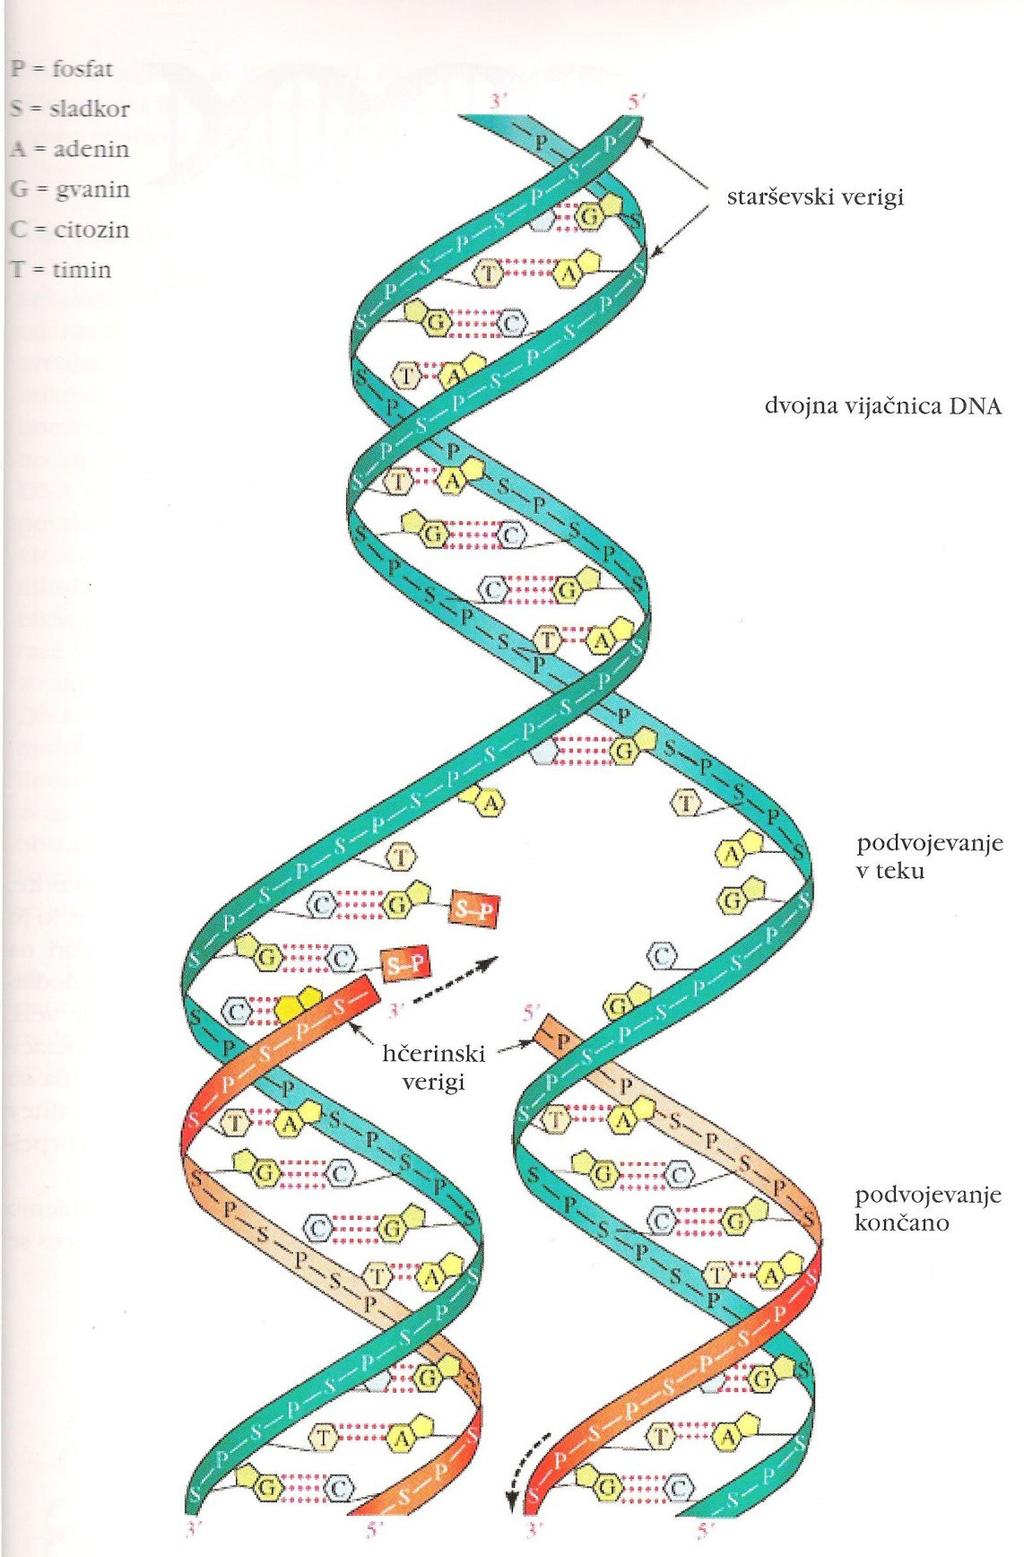 Poenostavljena shema podvojevanja dvojne vijačnice DNA vsaka